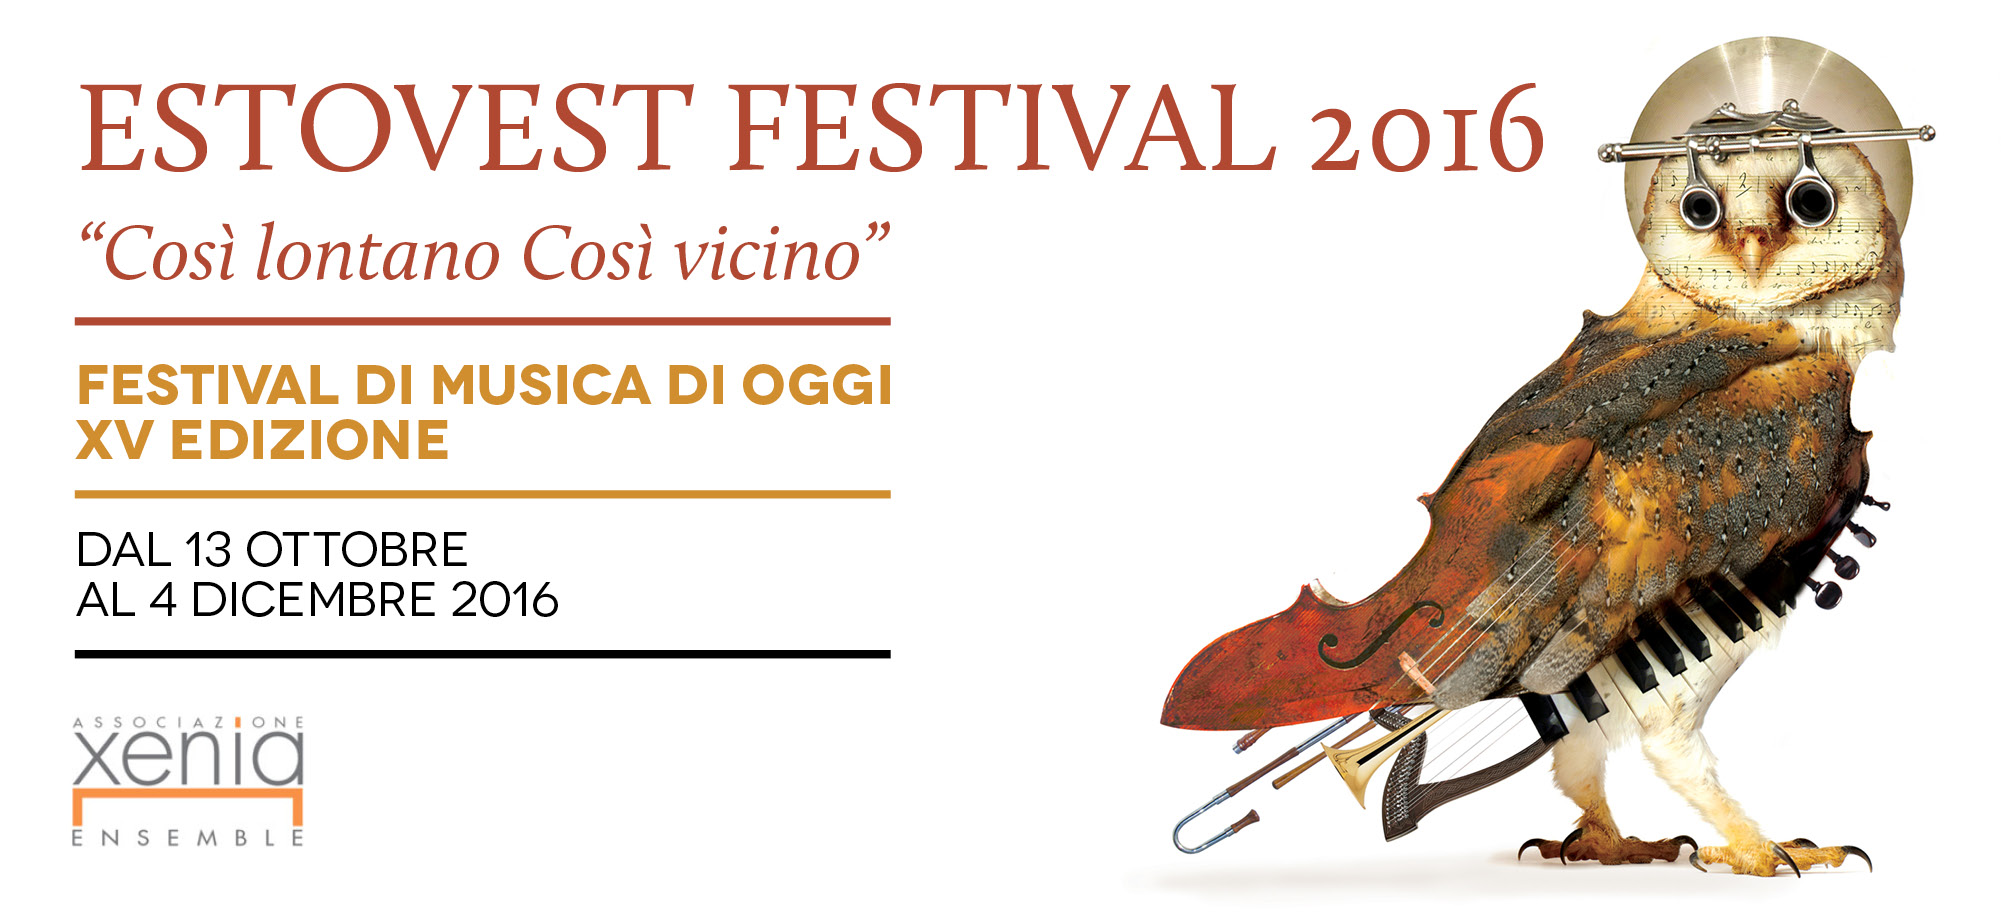 Estovest Festival: gli appuntamenti di giovedì 20 e sabato 22 ottobre